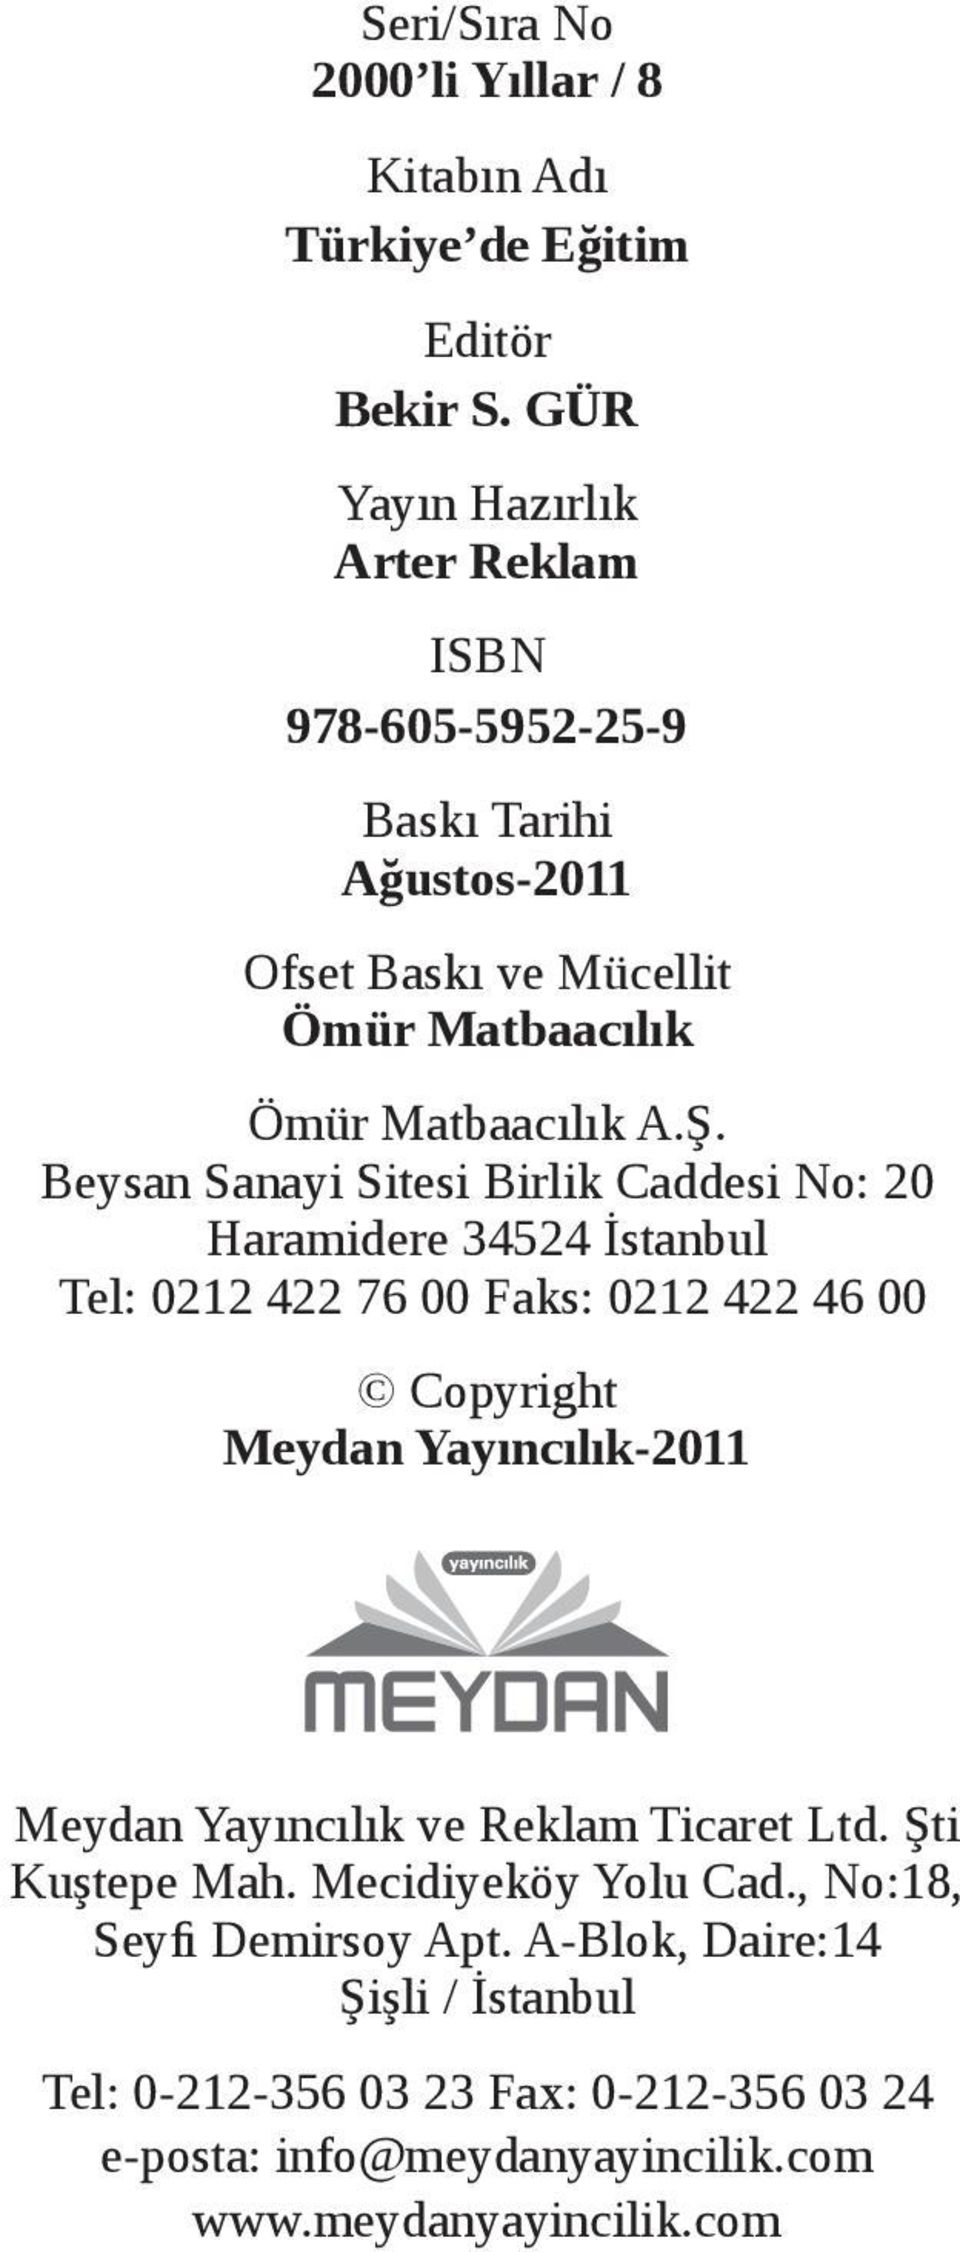 Beysan Sanayi Sitesi Birlik Caddesi No: 20 Haramidere 34524 İstanbul Tel: 0212 422 76 00 Faks: 0212 422 46 00 Copyright Meydan Yayıncılık-2011 Meydan